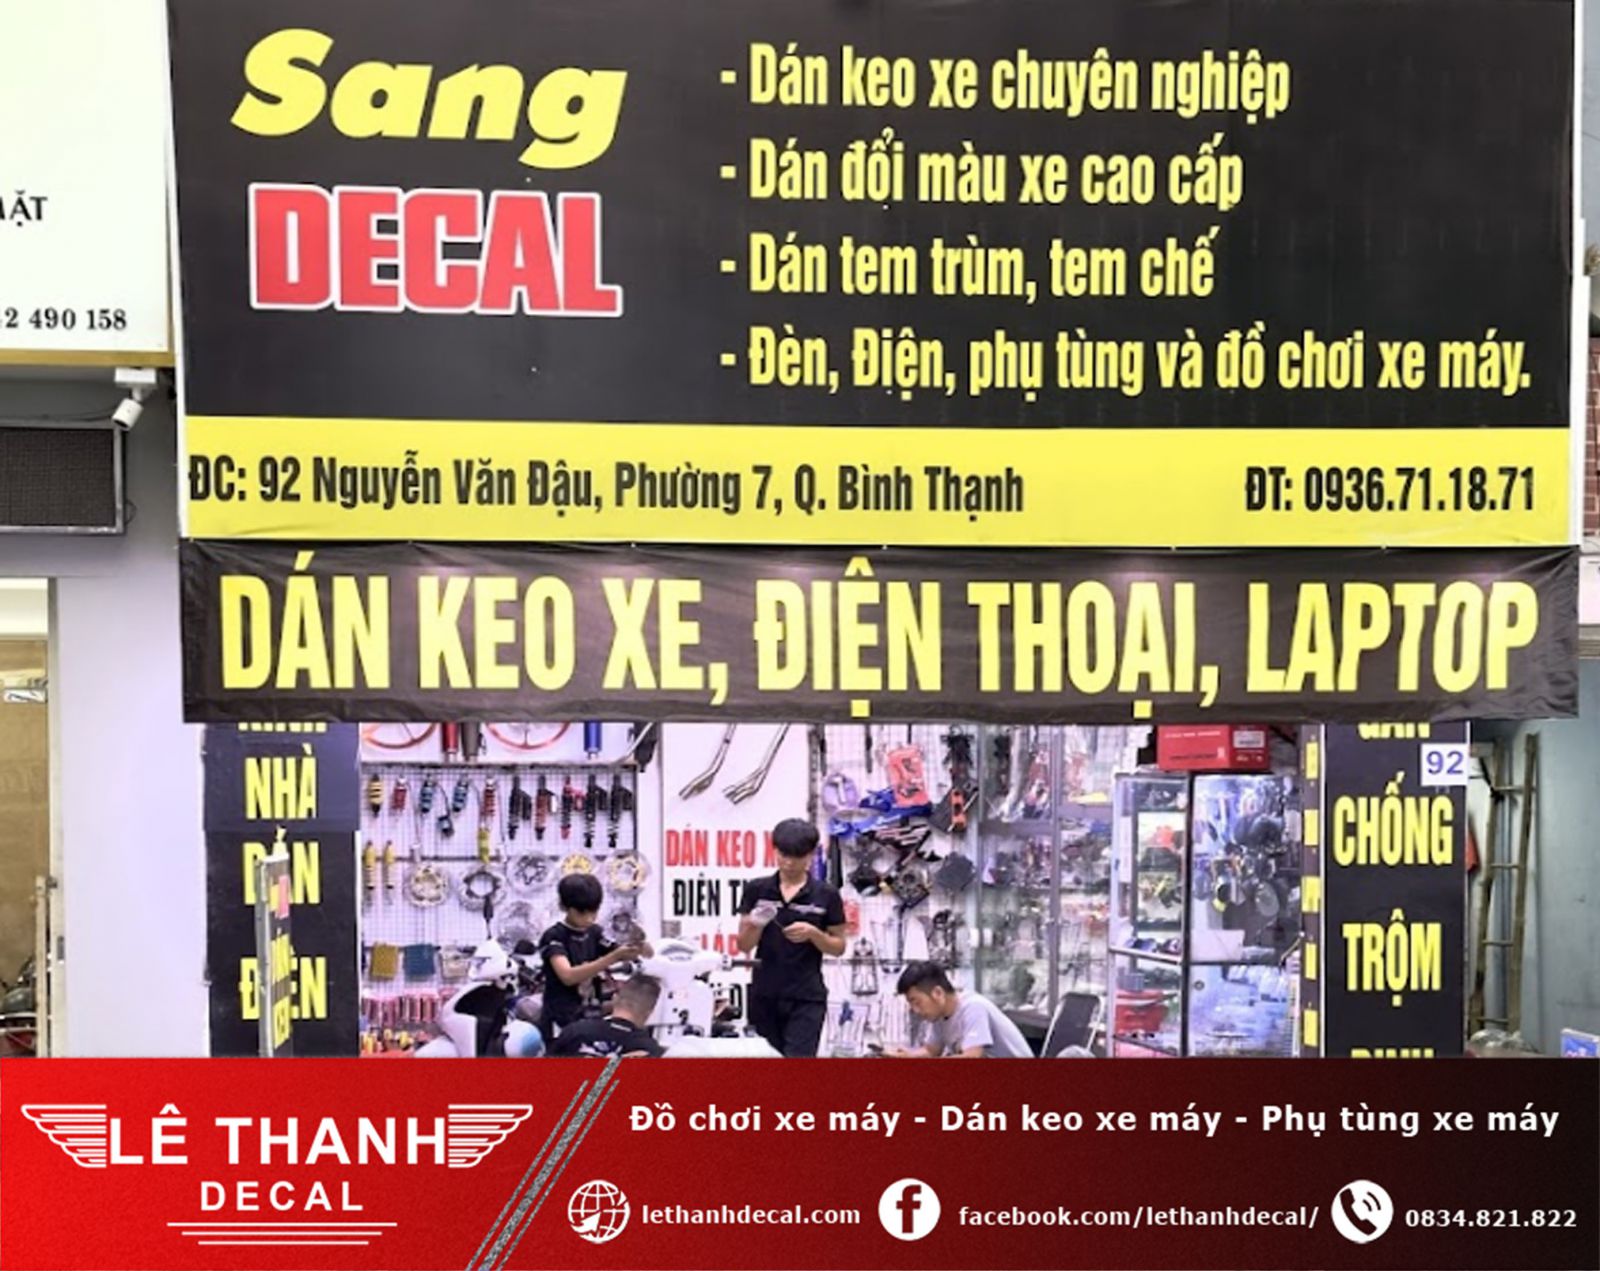 [TOP] 10+ tiệm dán decal xe máy tại quận Bình Thạnh uy tín, chất lượng 2023